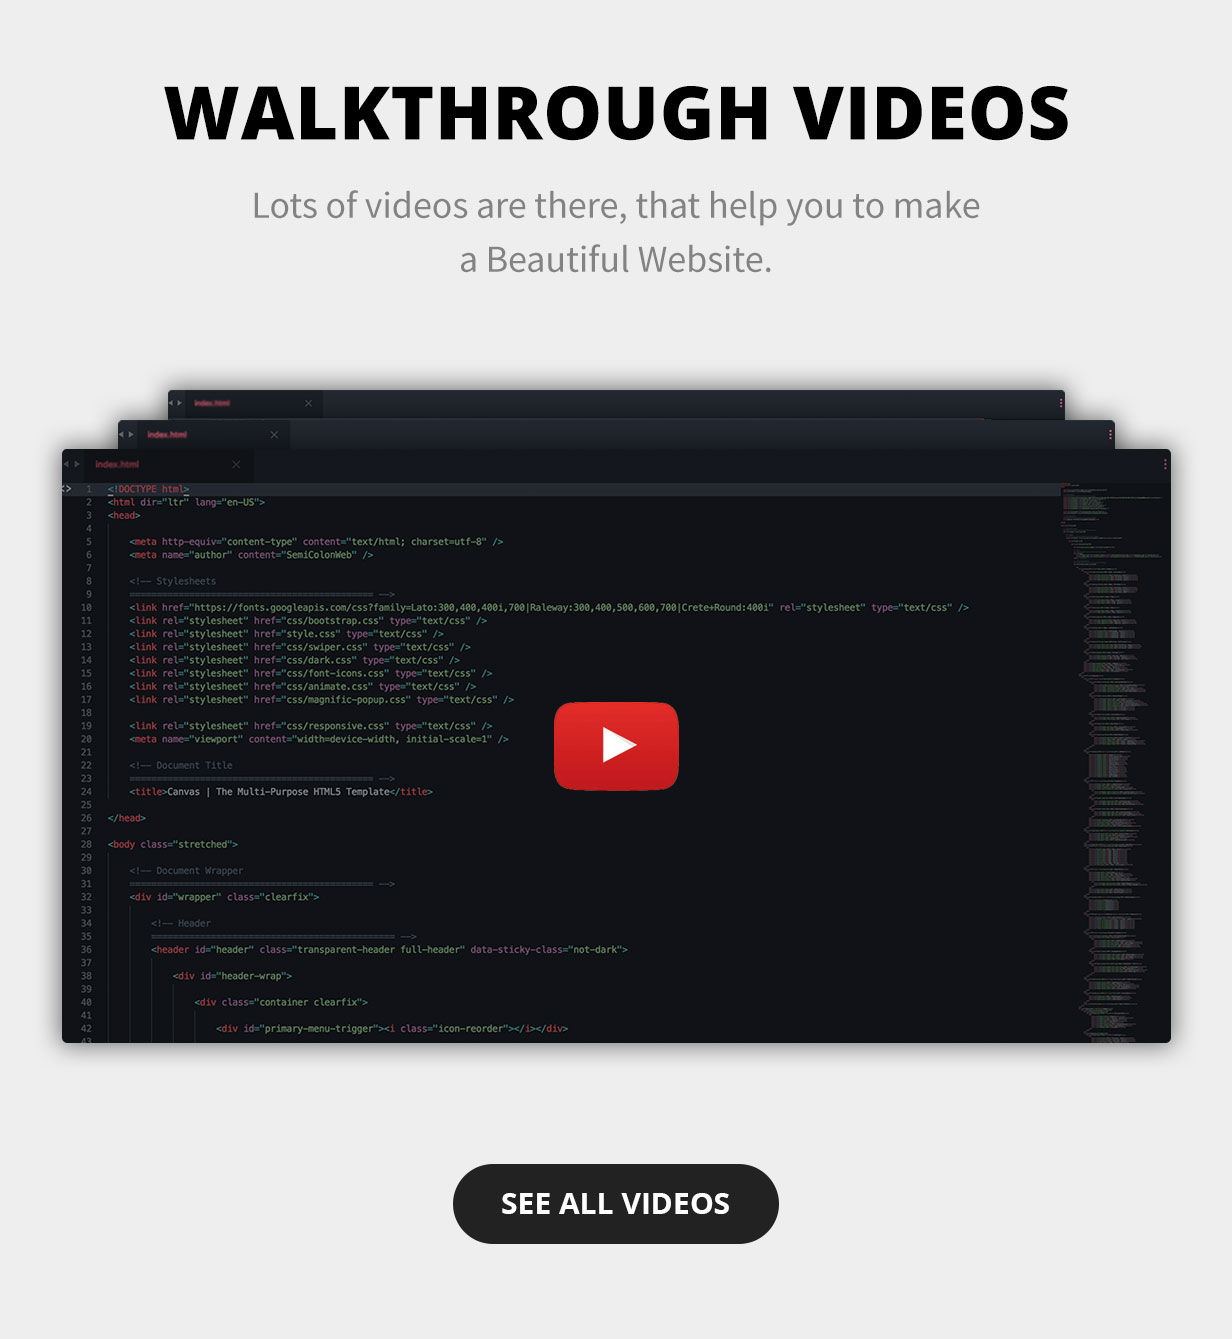 Walkthrough Videos